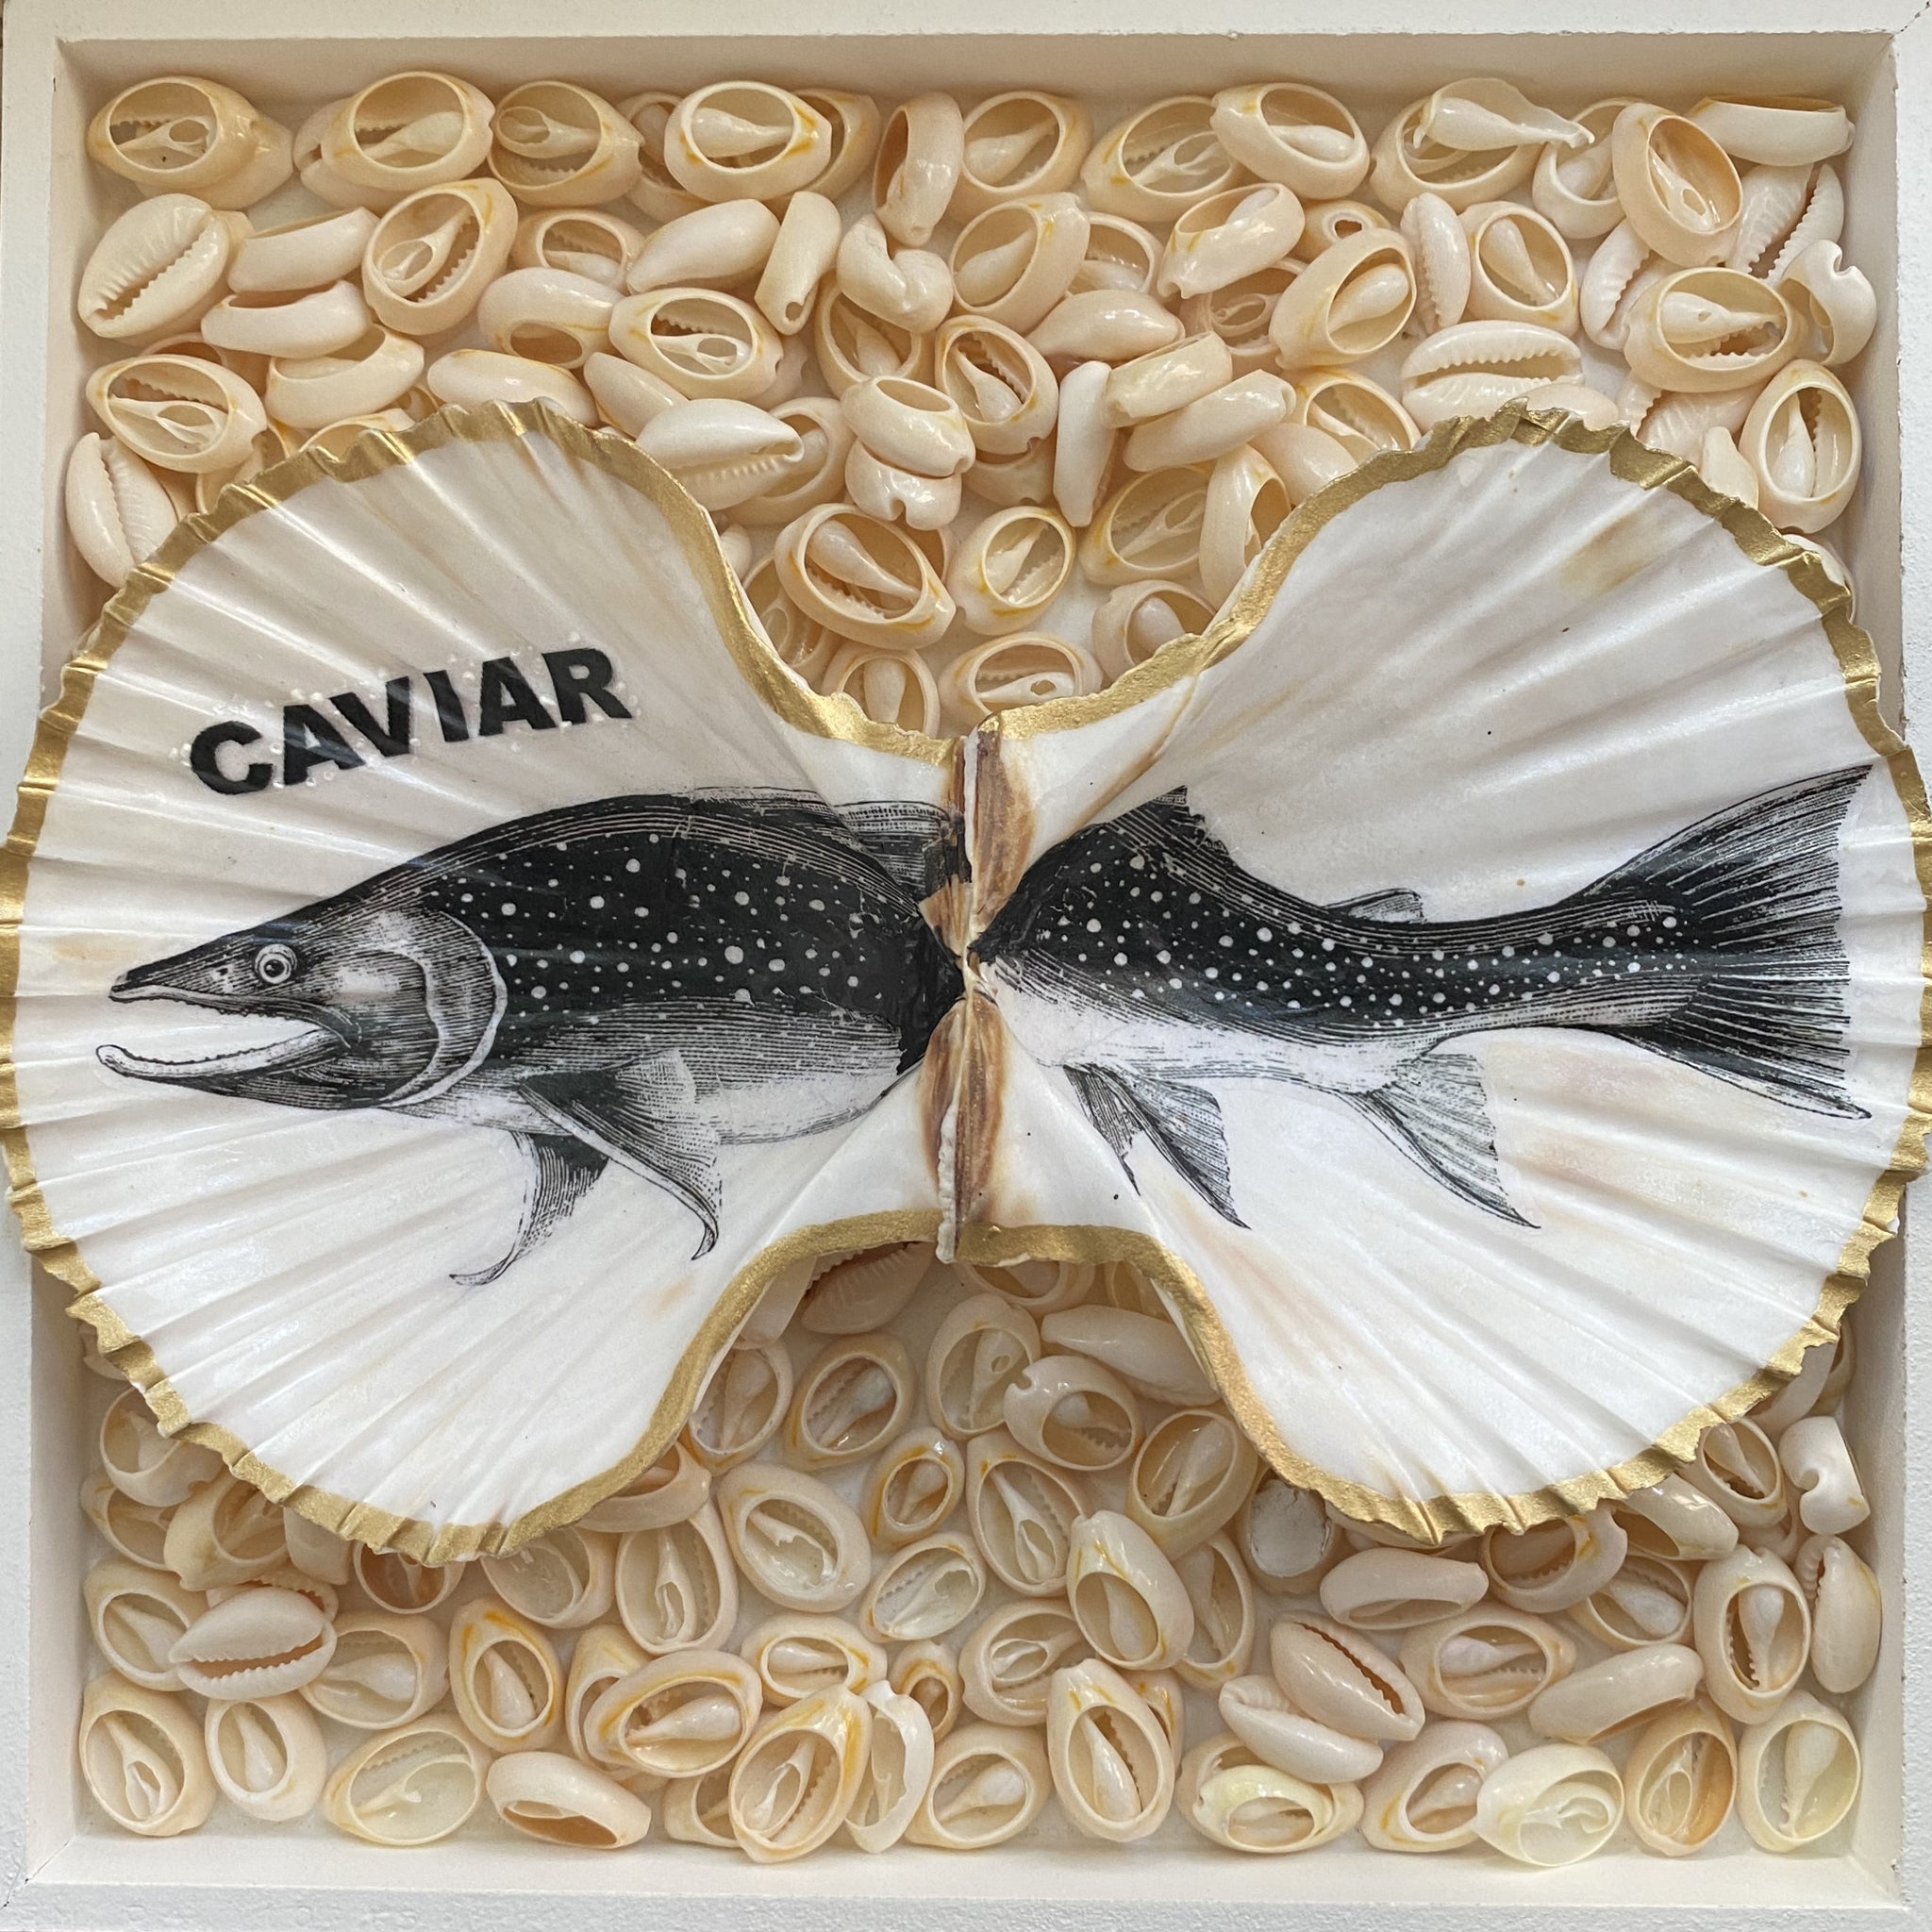 2er Set Caviar Duo, echte Jakobsmuschel